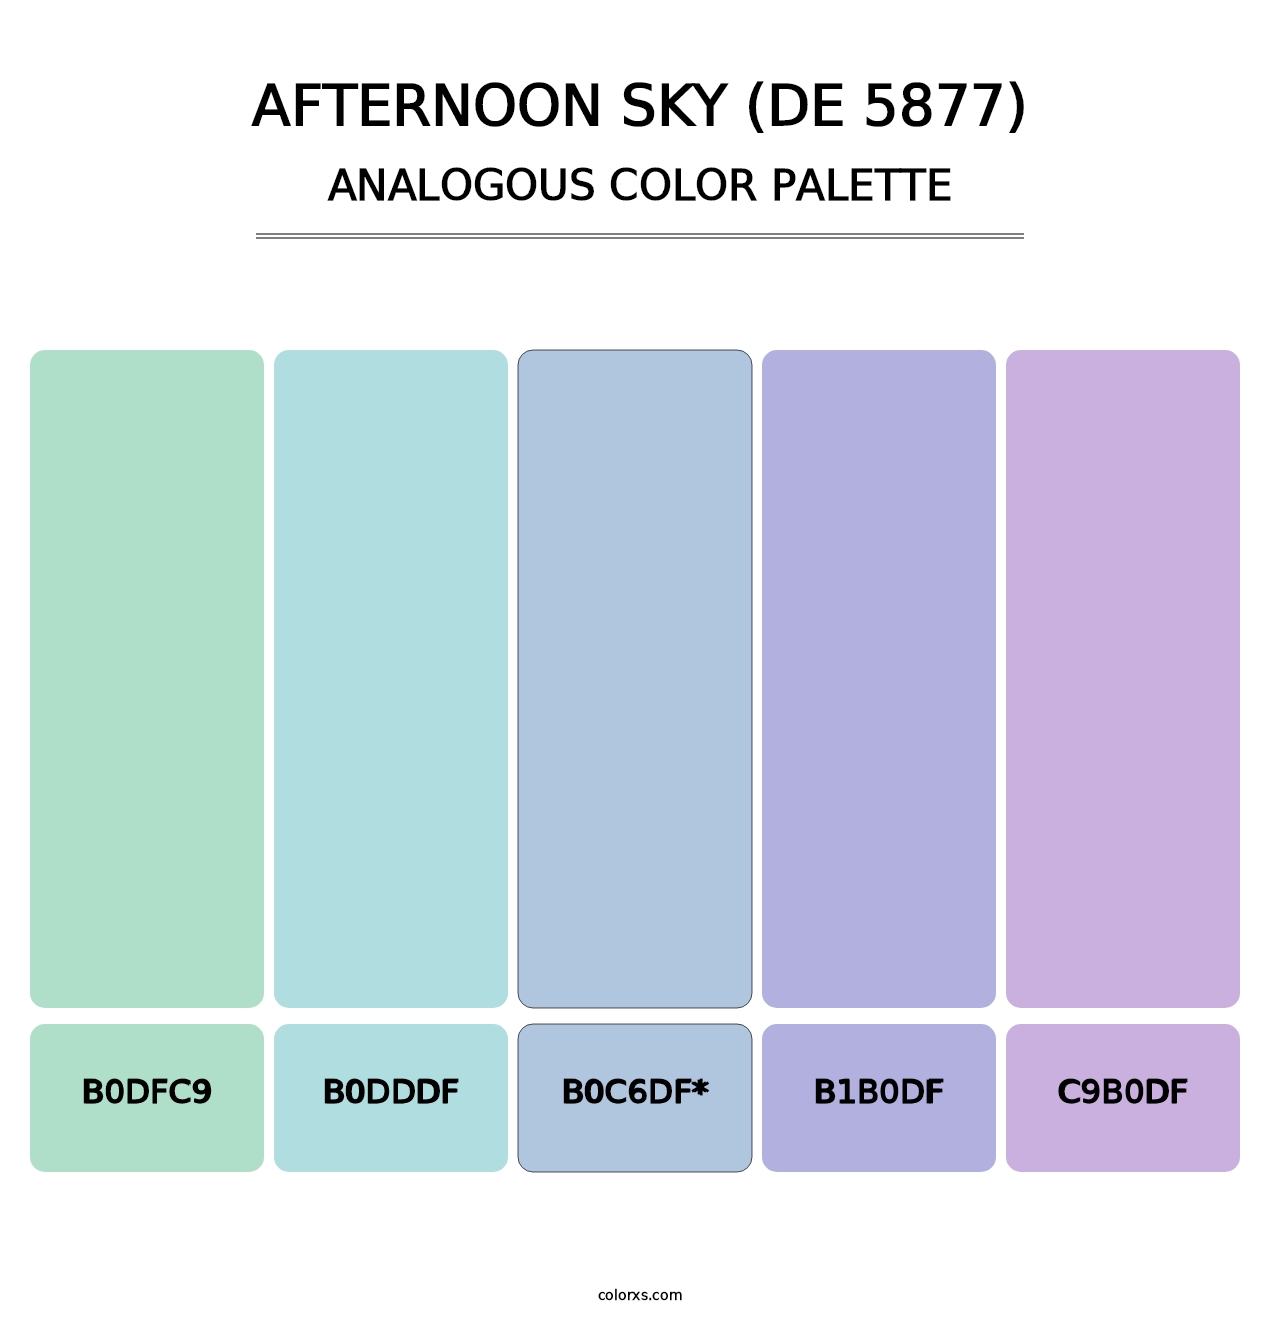 Afternoon Sky (DE 5877) - Analogous Color Palette